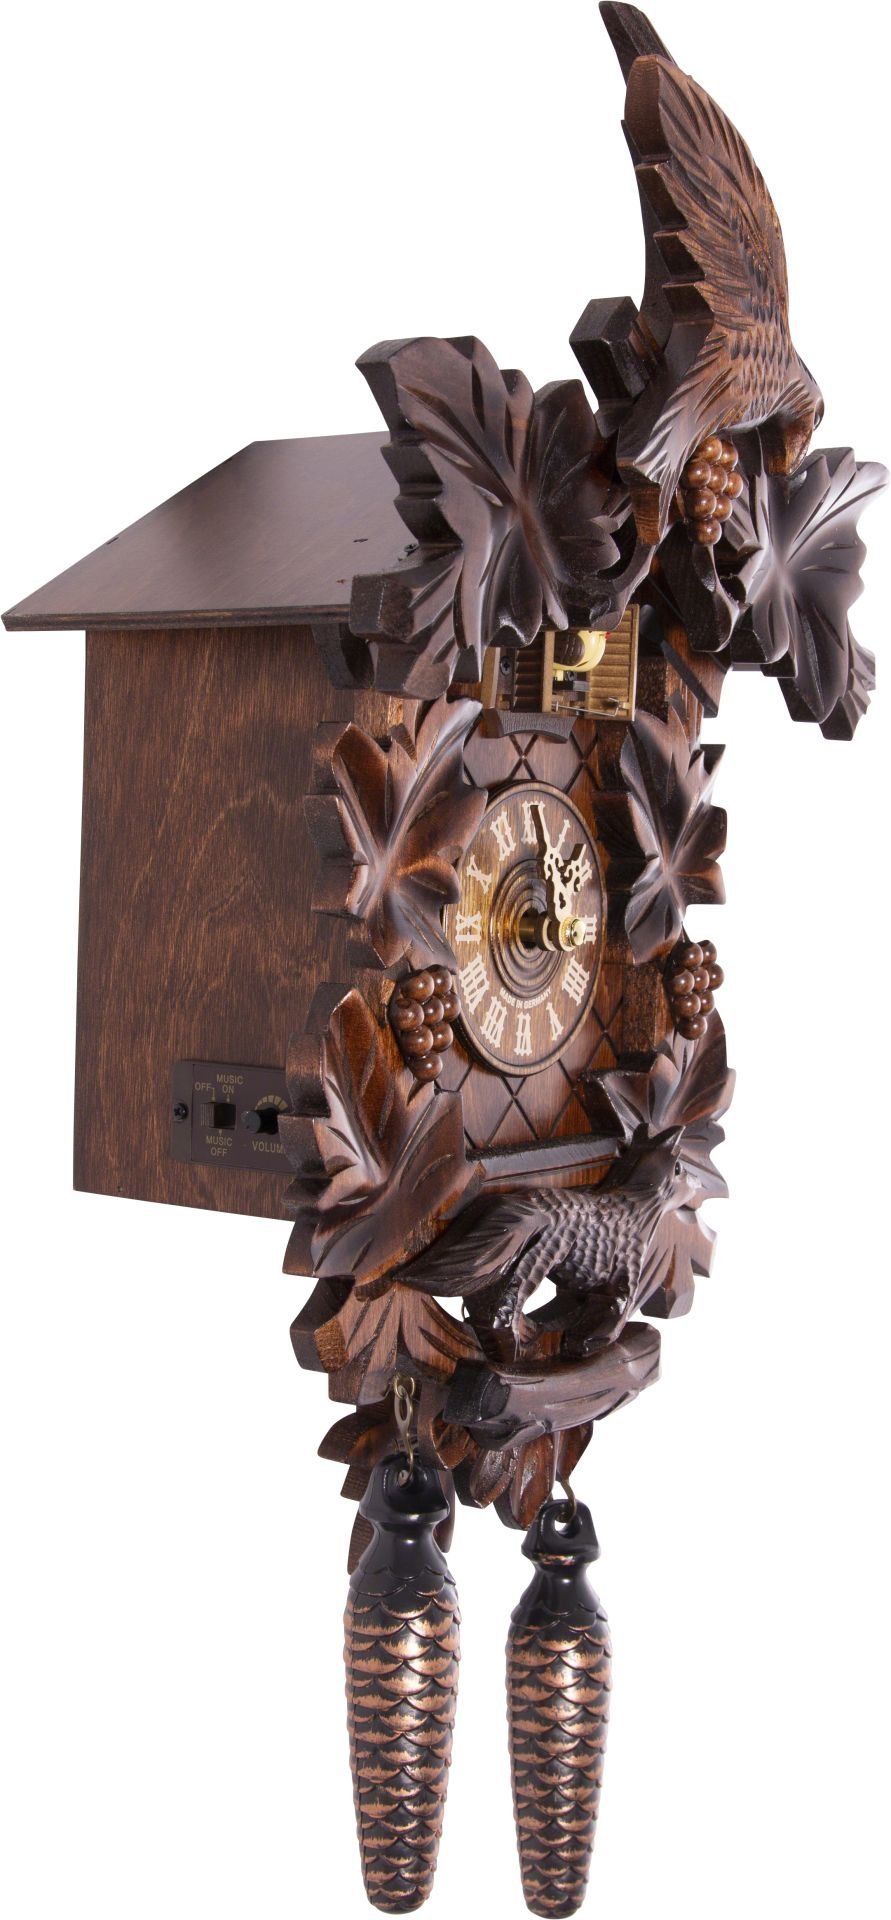 Horloge coucou traditionnelle mouvement à quartz 40cm de Trenkle Uhren